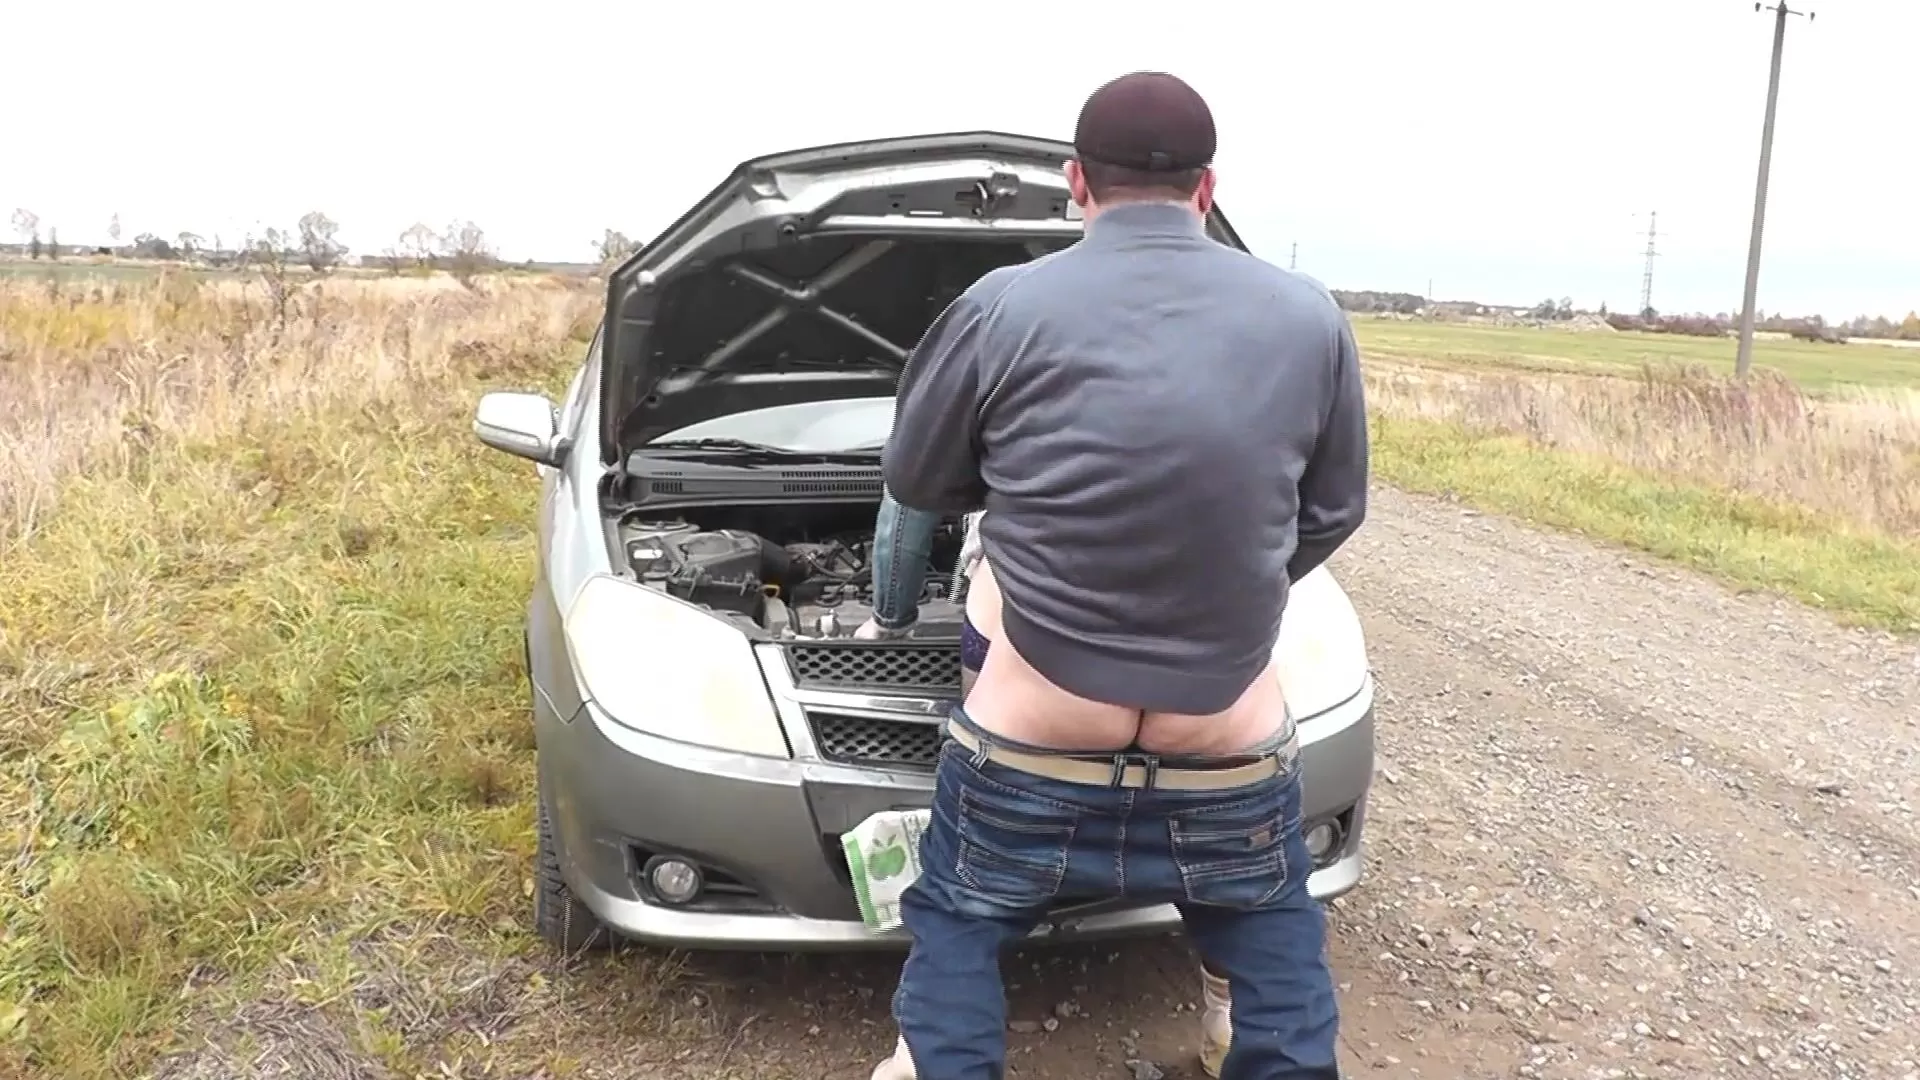 Random hombre transeúnte ayudó a reparar el coche DuBarry y follada al estilo perrito en auto capó